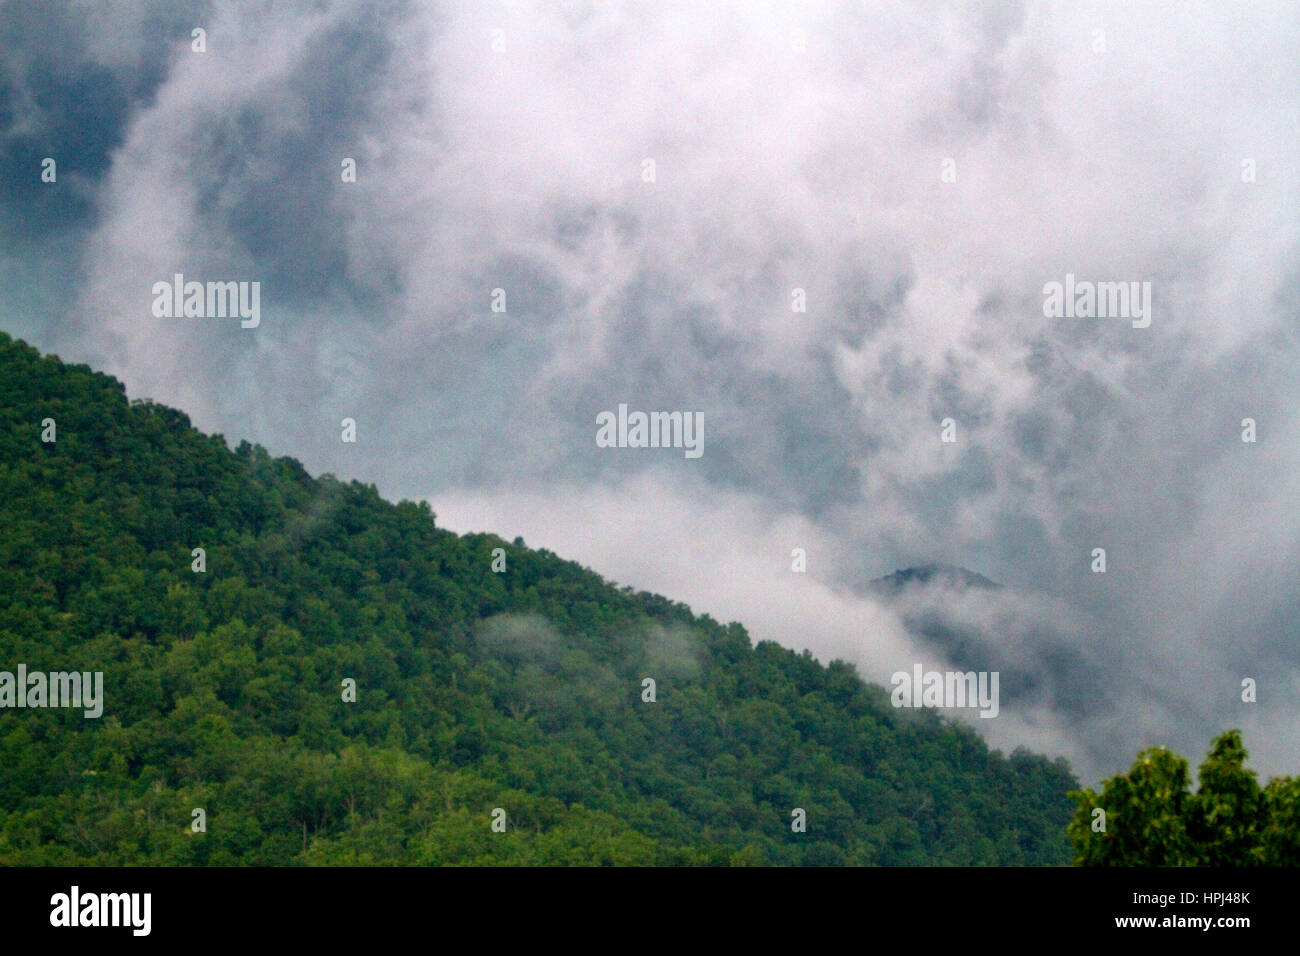 Storm clouds build over the Blue Ridge Mountains at Nantahala Lake, North Carolina, USA. Stock Photo